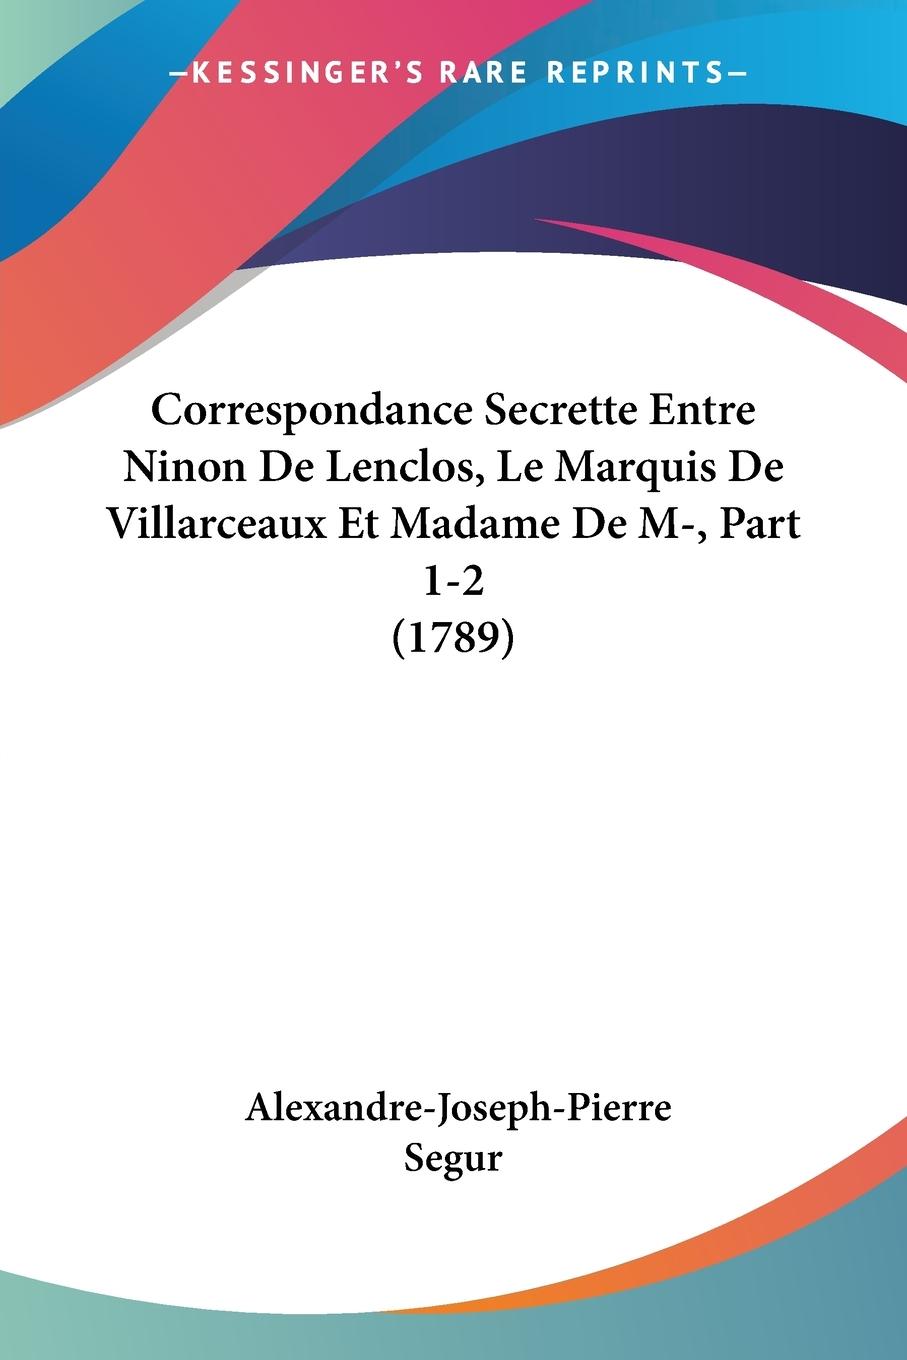 Correspondance Secrette Entre Ninon De Lenclos, Le Marquis De Villarceaux Et Madame De M-, Part 1-2 (1789) - Segur, Alexandre-Joseph-Pierre